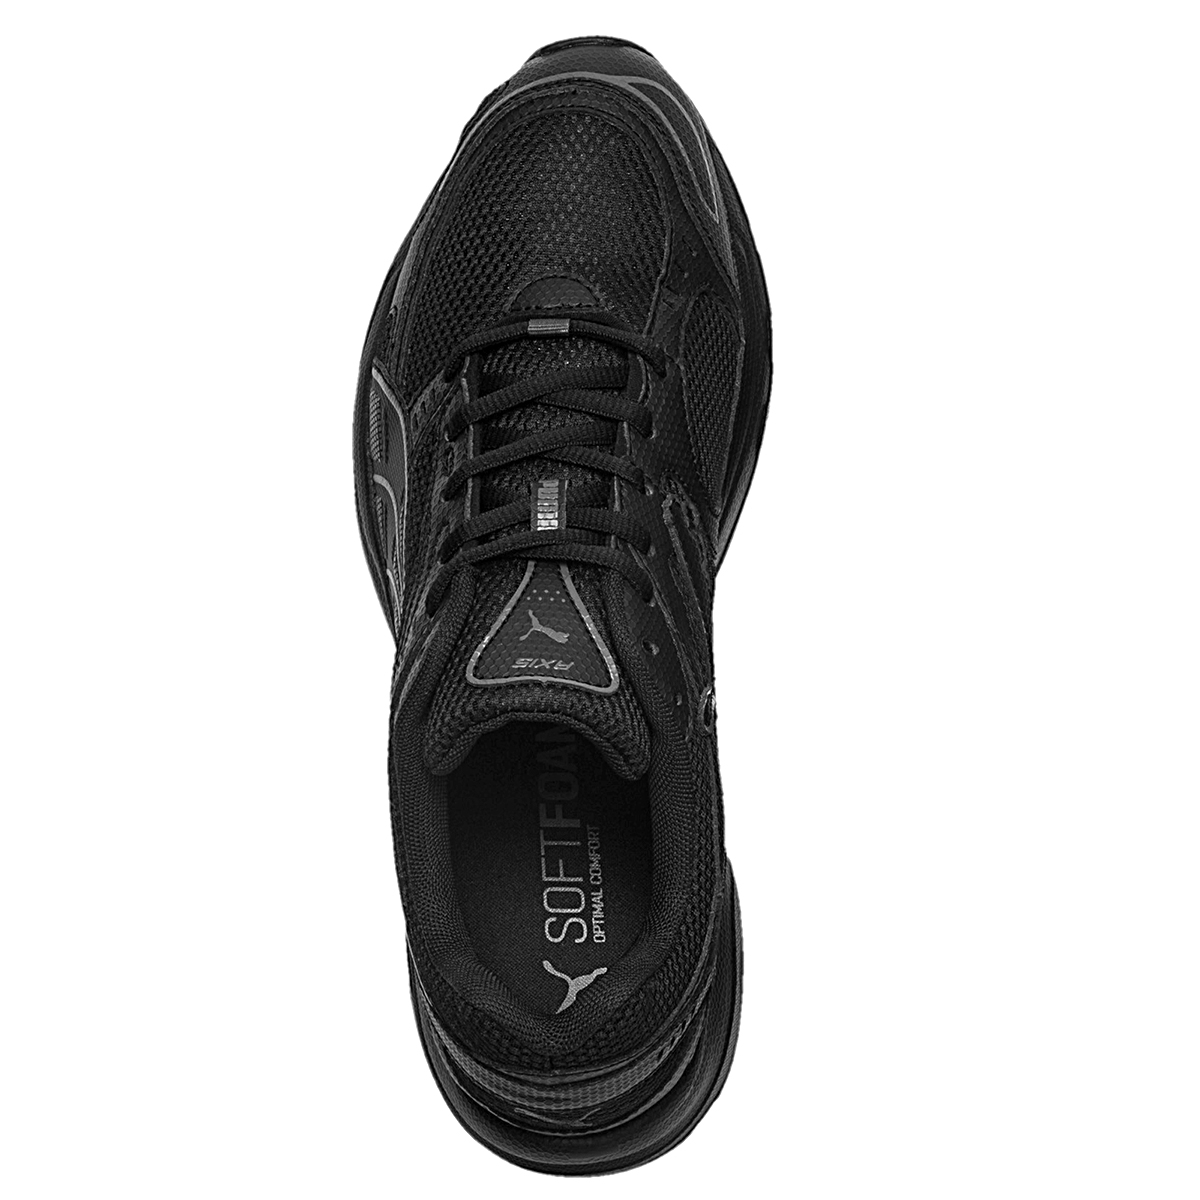 Puma Axis Herren Sneaker Schuhe schwarz 368465 01